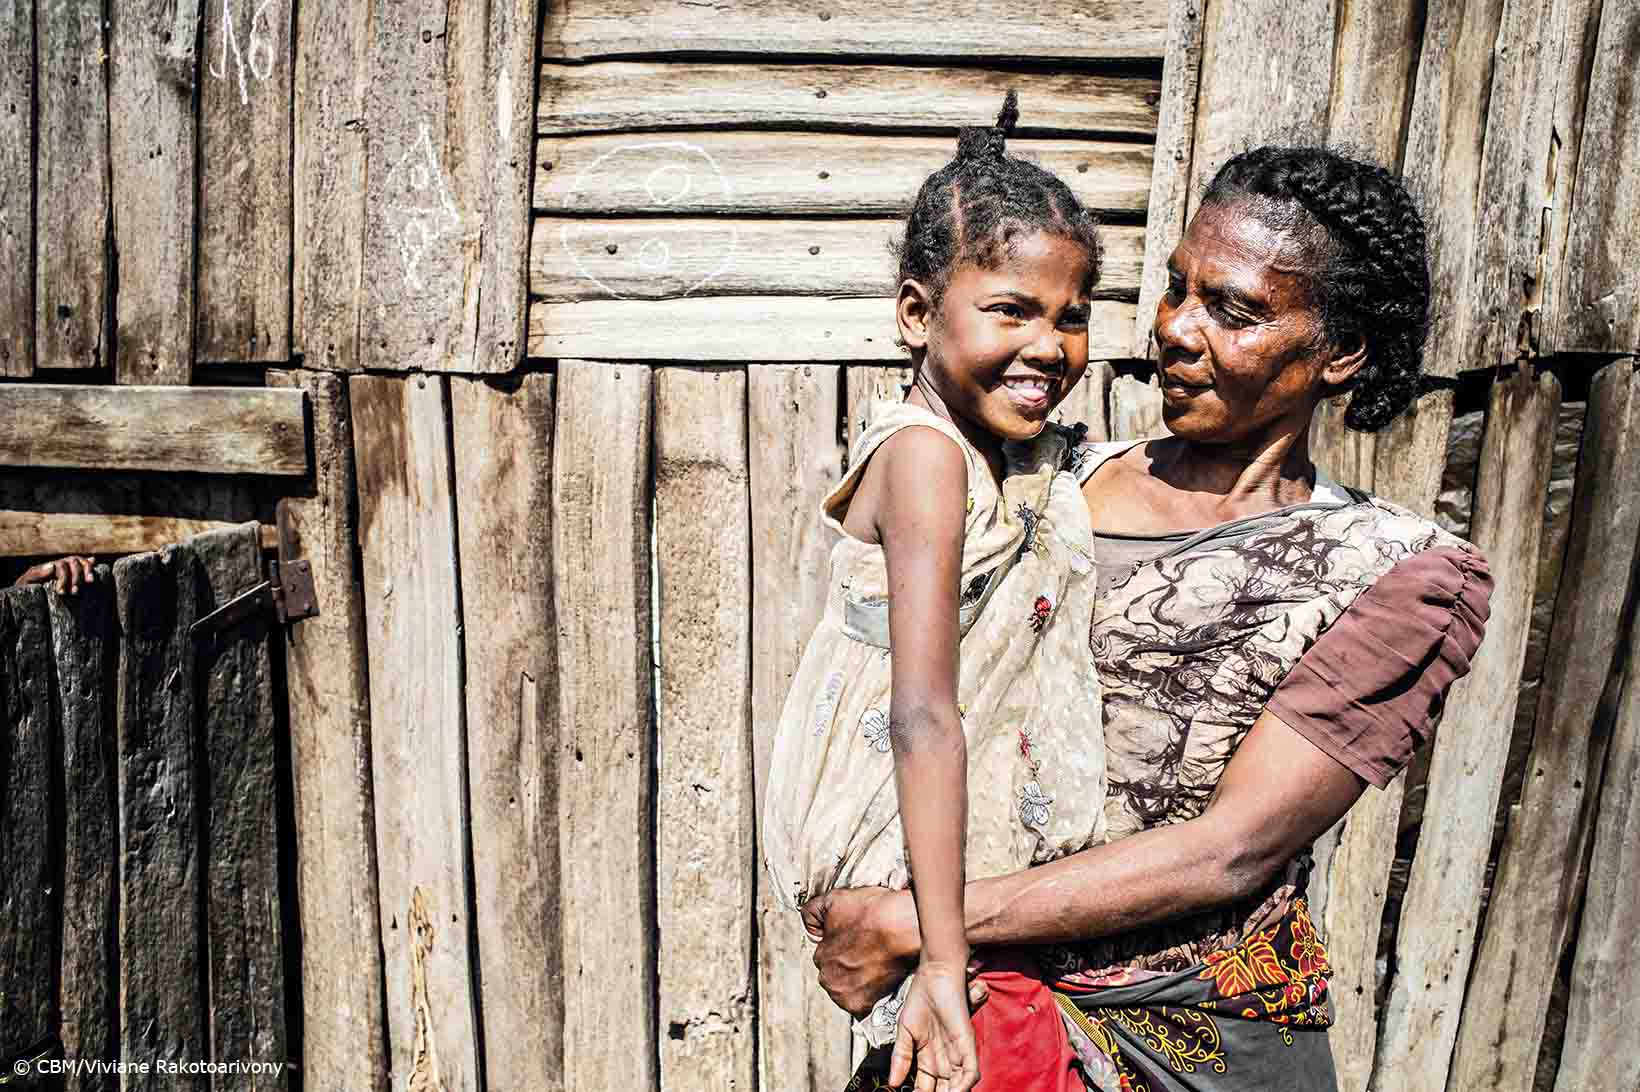 Una donna di mezza età con i capelli accuratamente intrecciati guarda il volto divertito di una bambina al suo braccio. I due sono in piedi davanti a una piccola casa di legno nel sud del Madagascar.